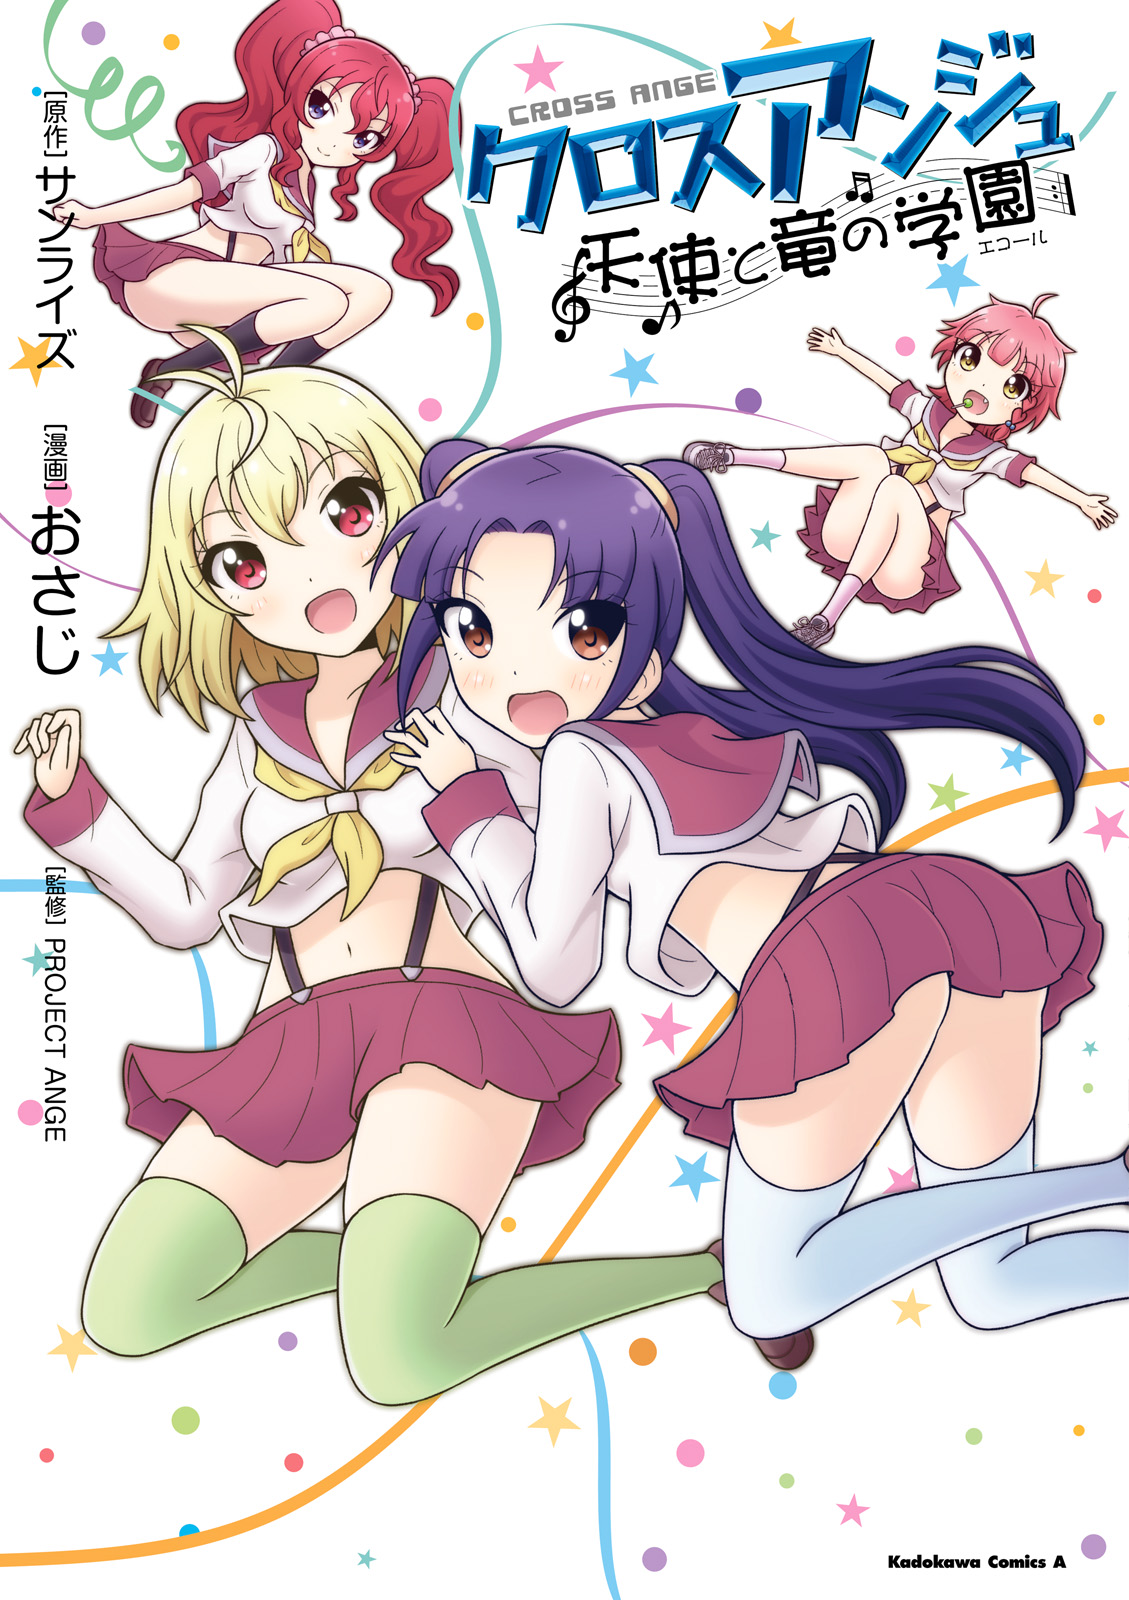 Cross Ange Manga Ends With 3rd Volume - News - Anime News Network